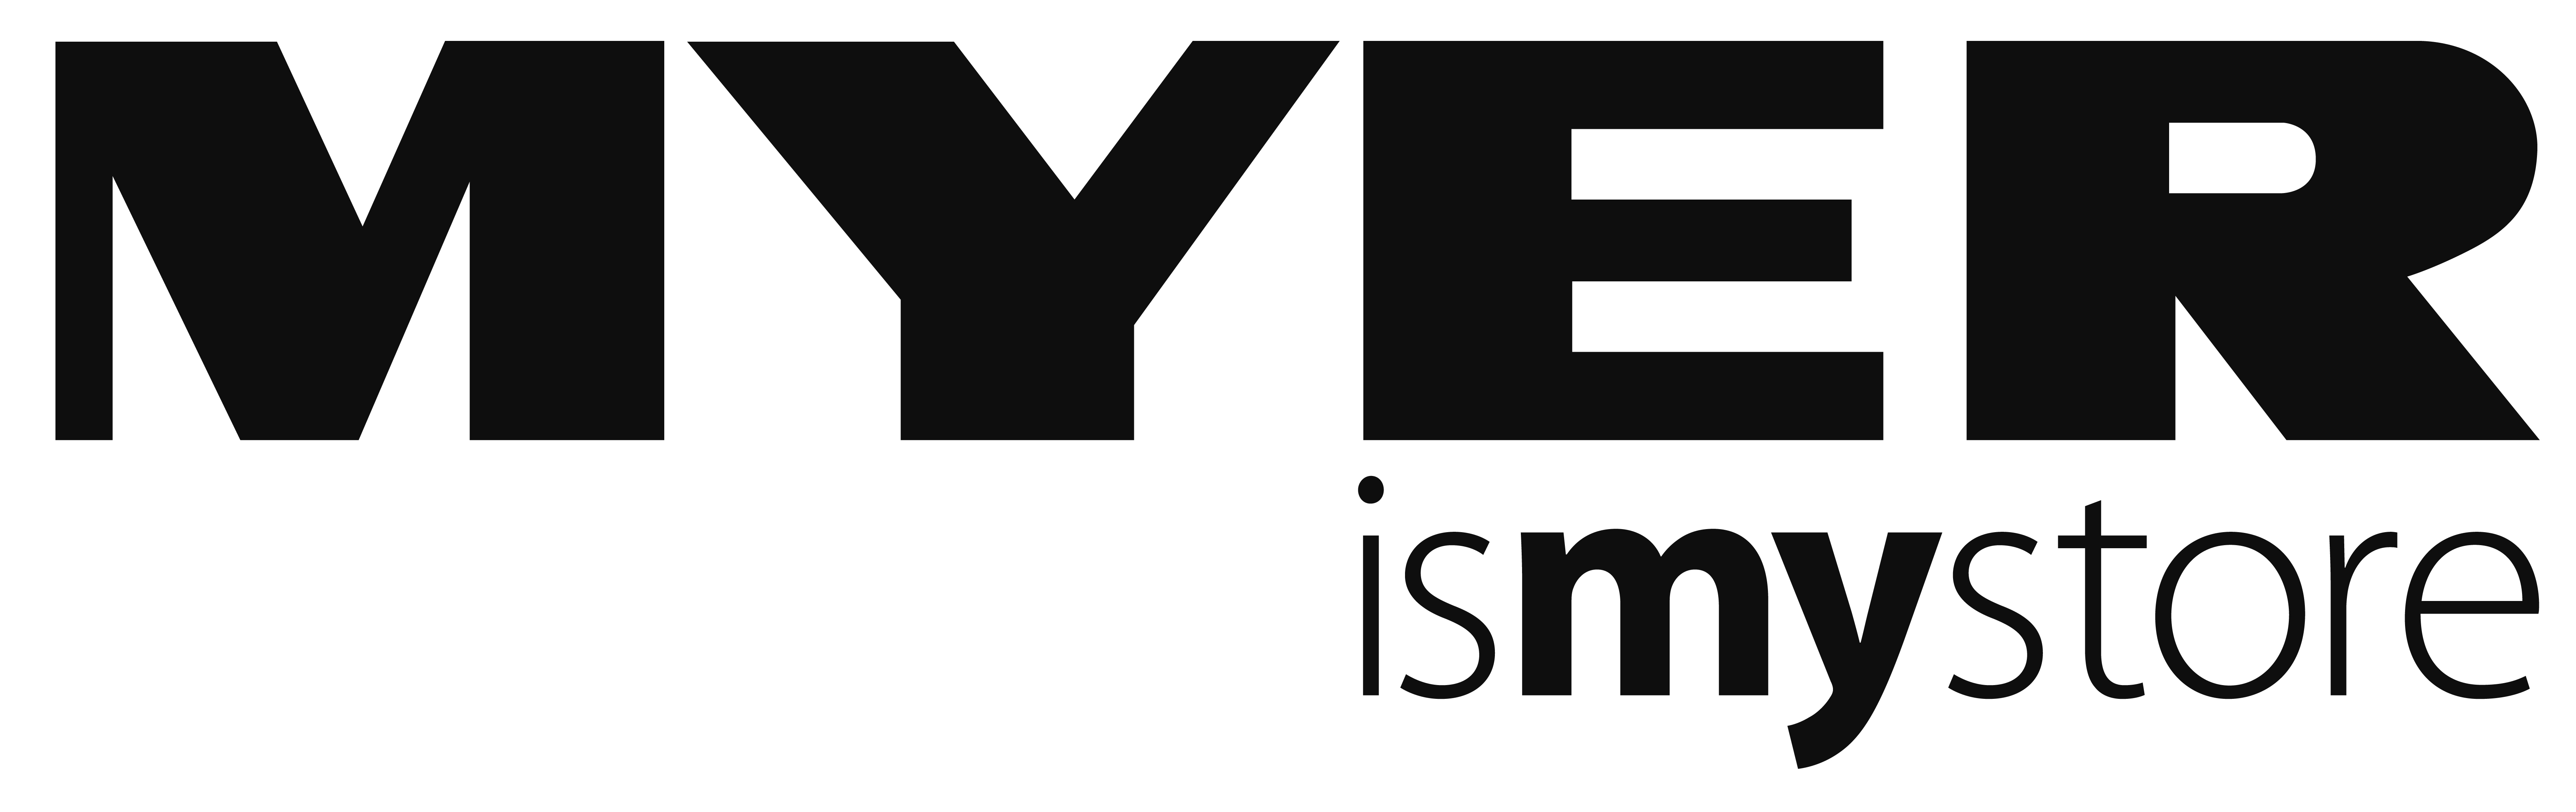 MYER Logo - MELBOURNE GIRL